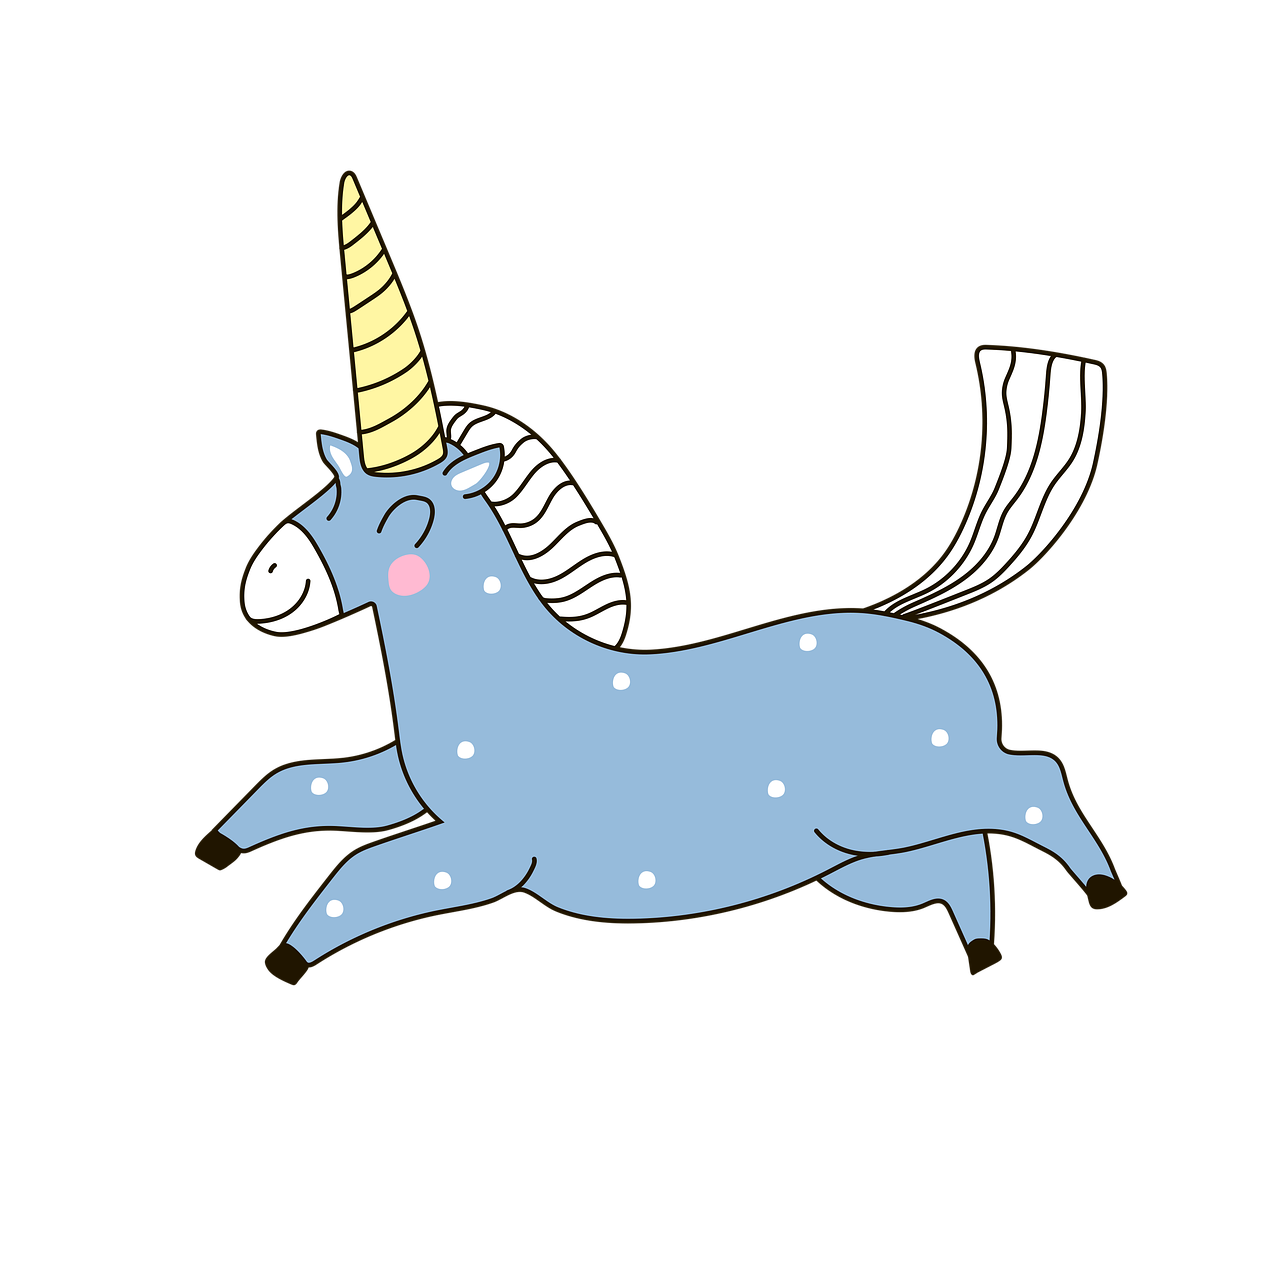 ¿Cuál es el significado del unicornio?